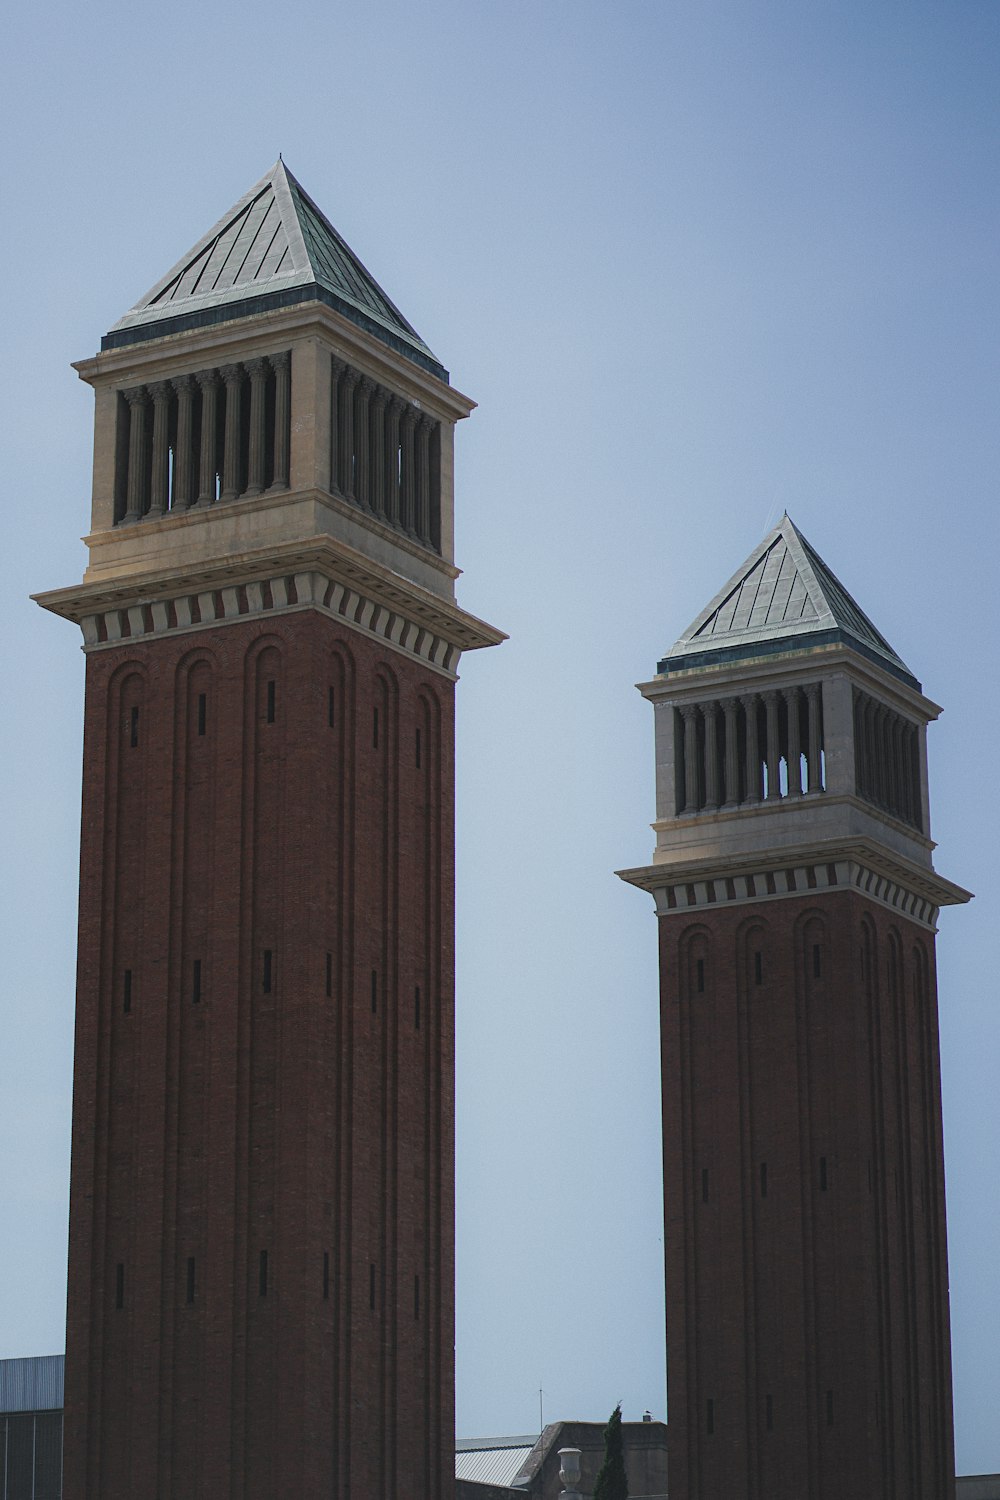 Dos altas torres de ladrillo con un reloj en cada una de ellas